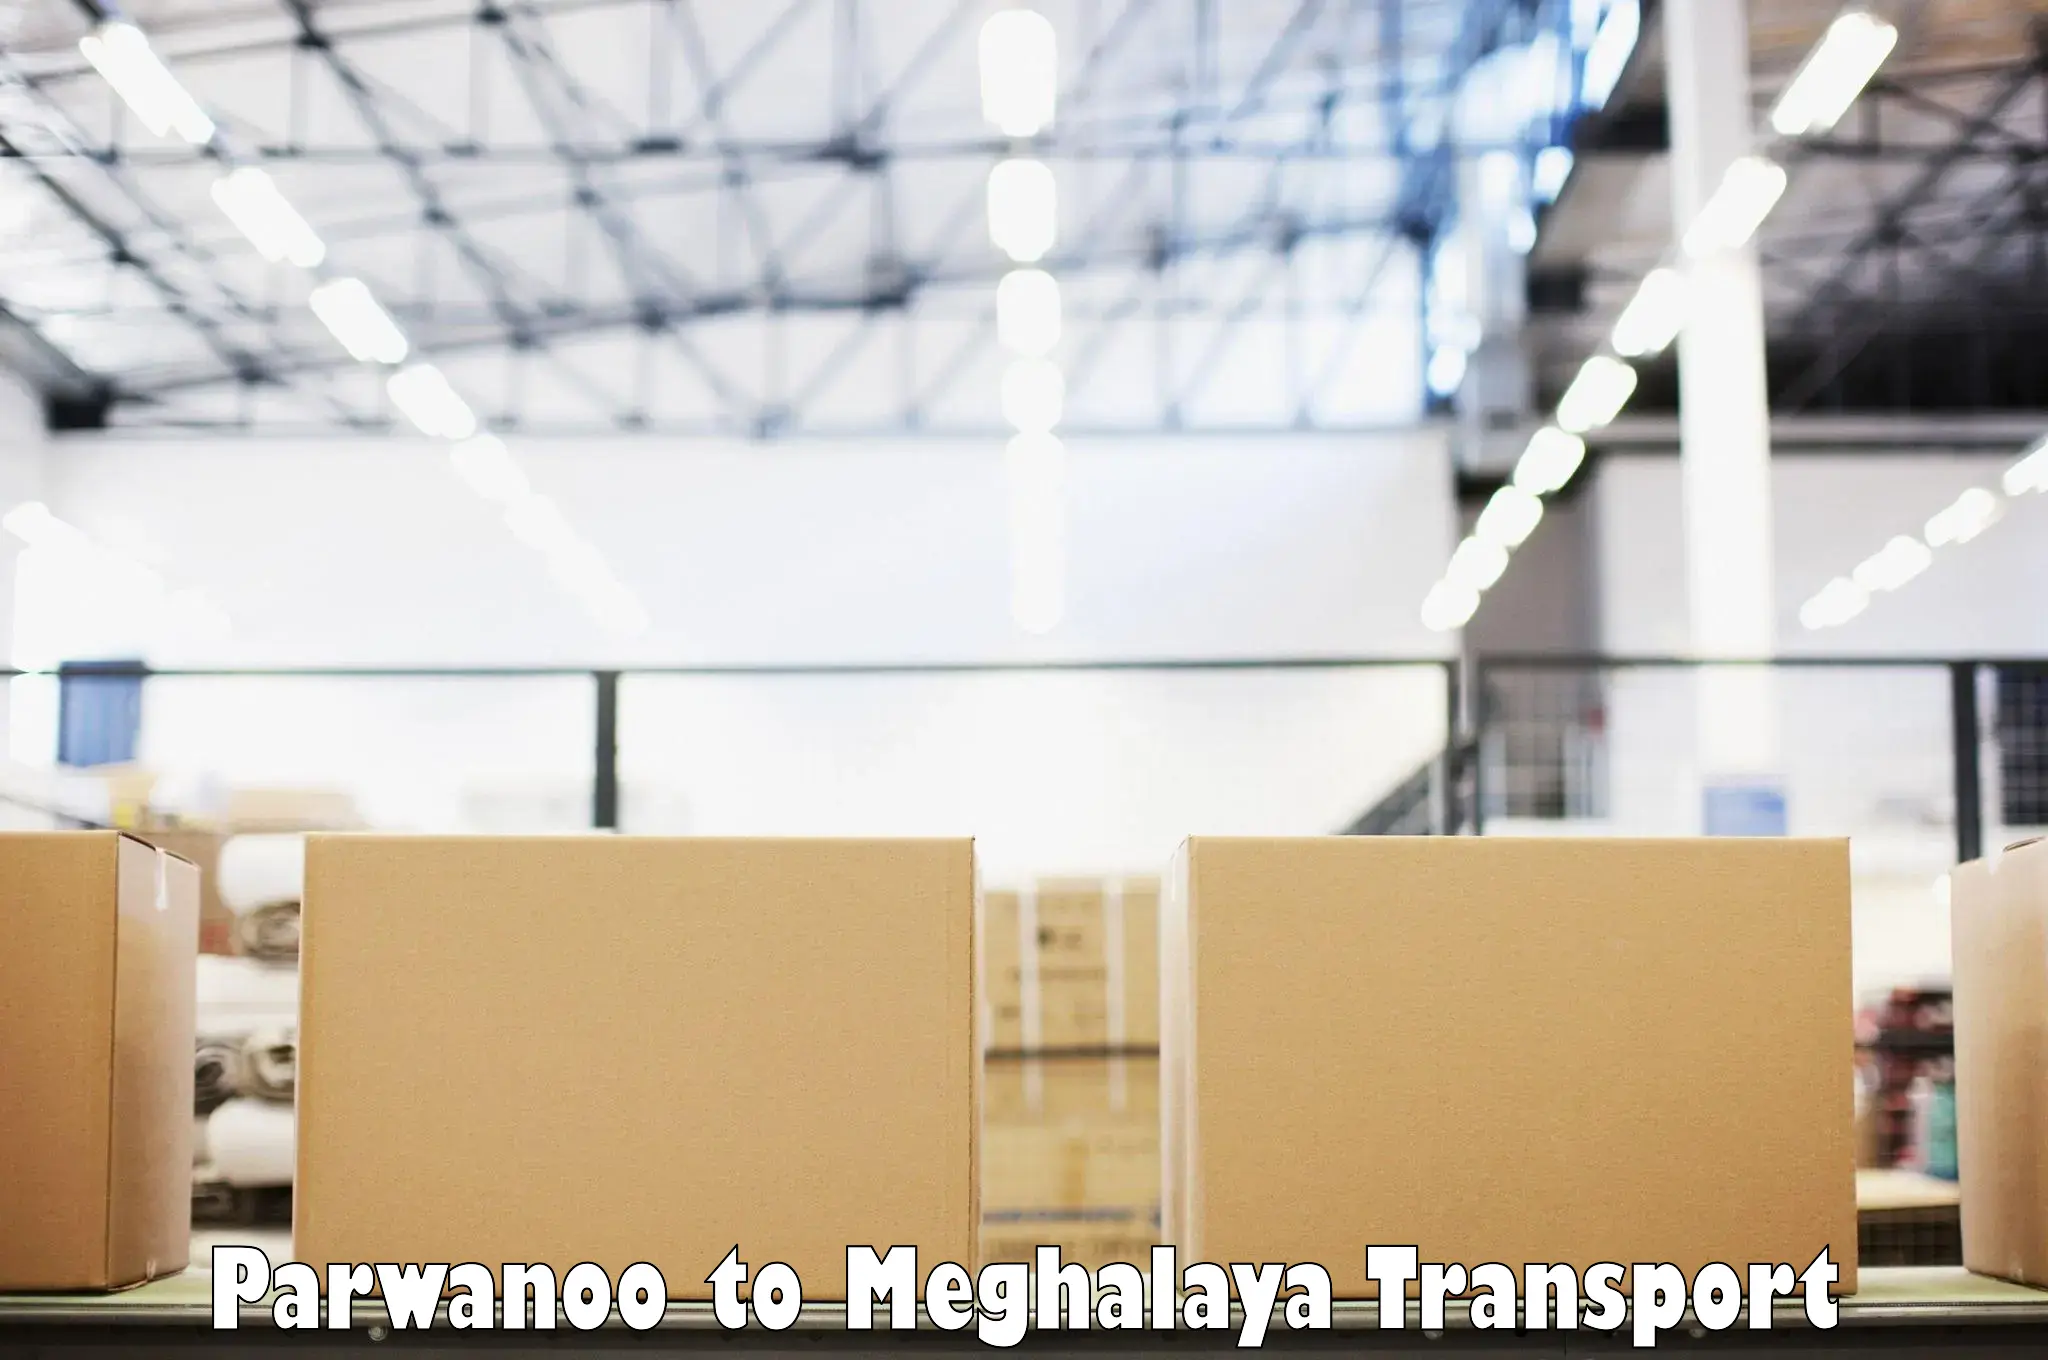 Transport in sharing Parwanoo to Meghalaya